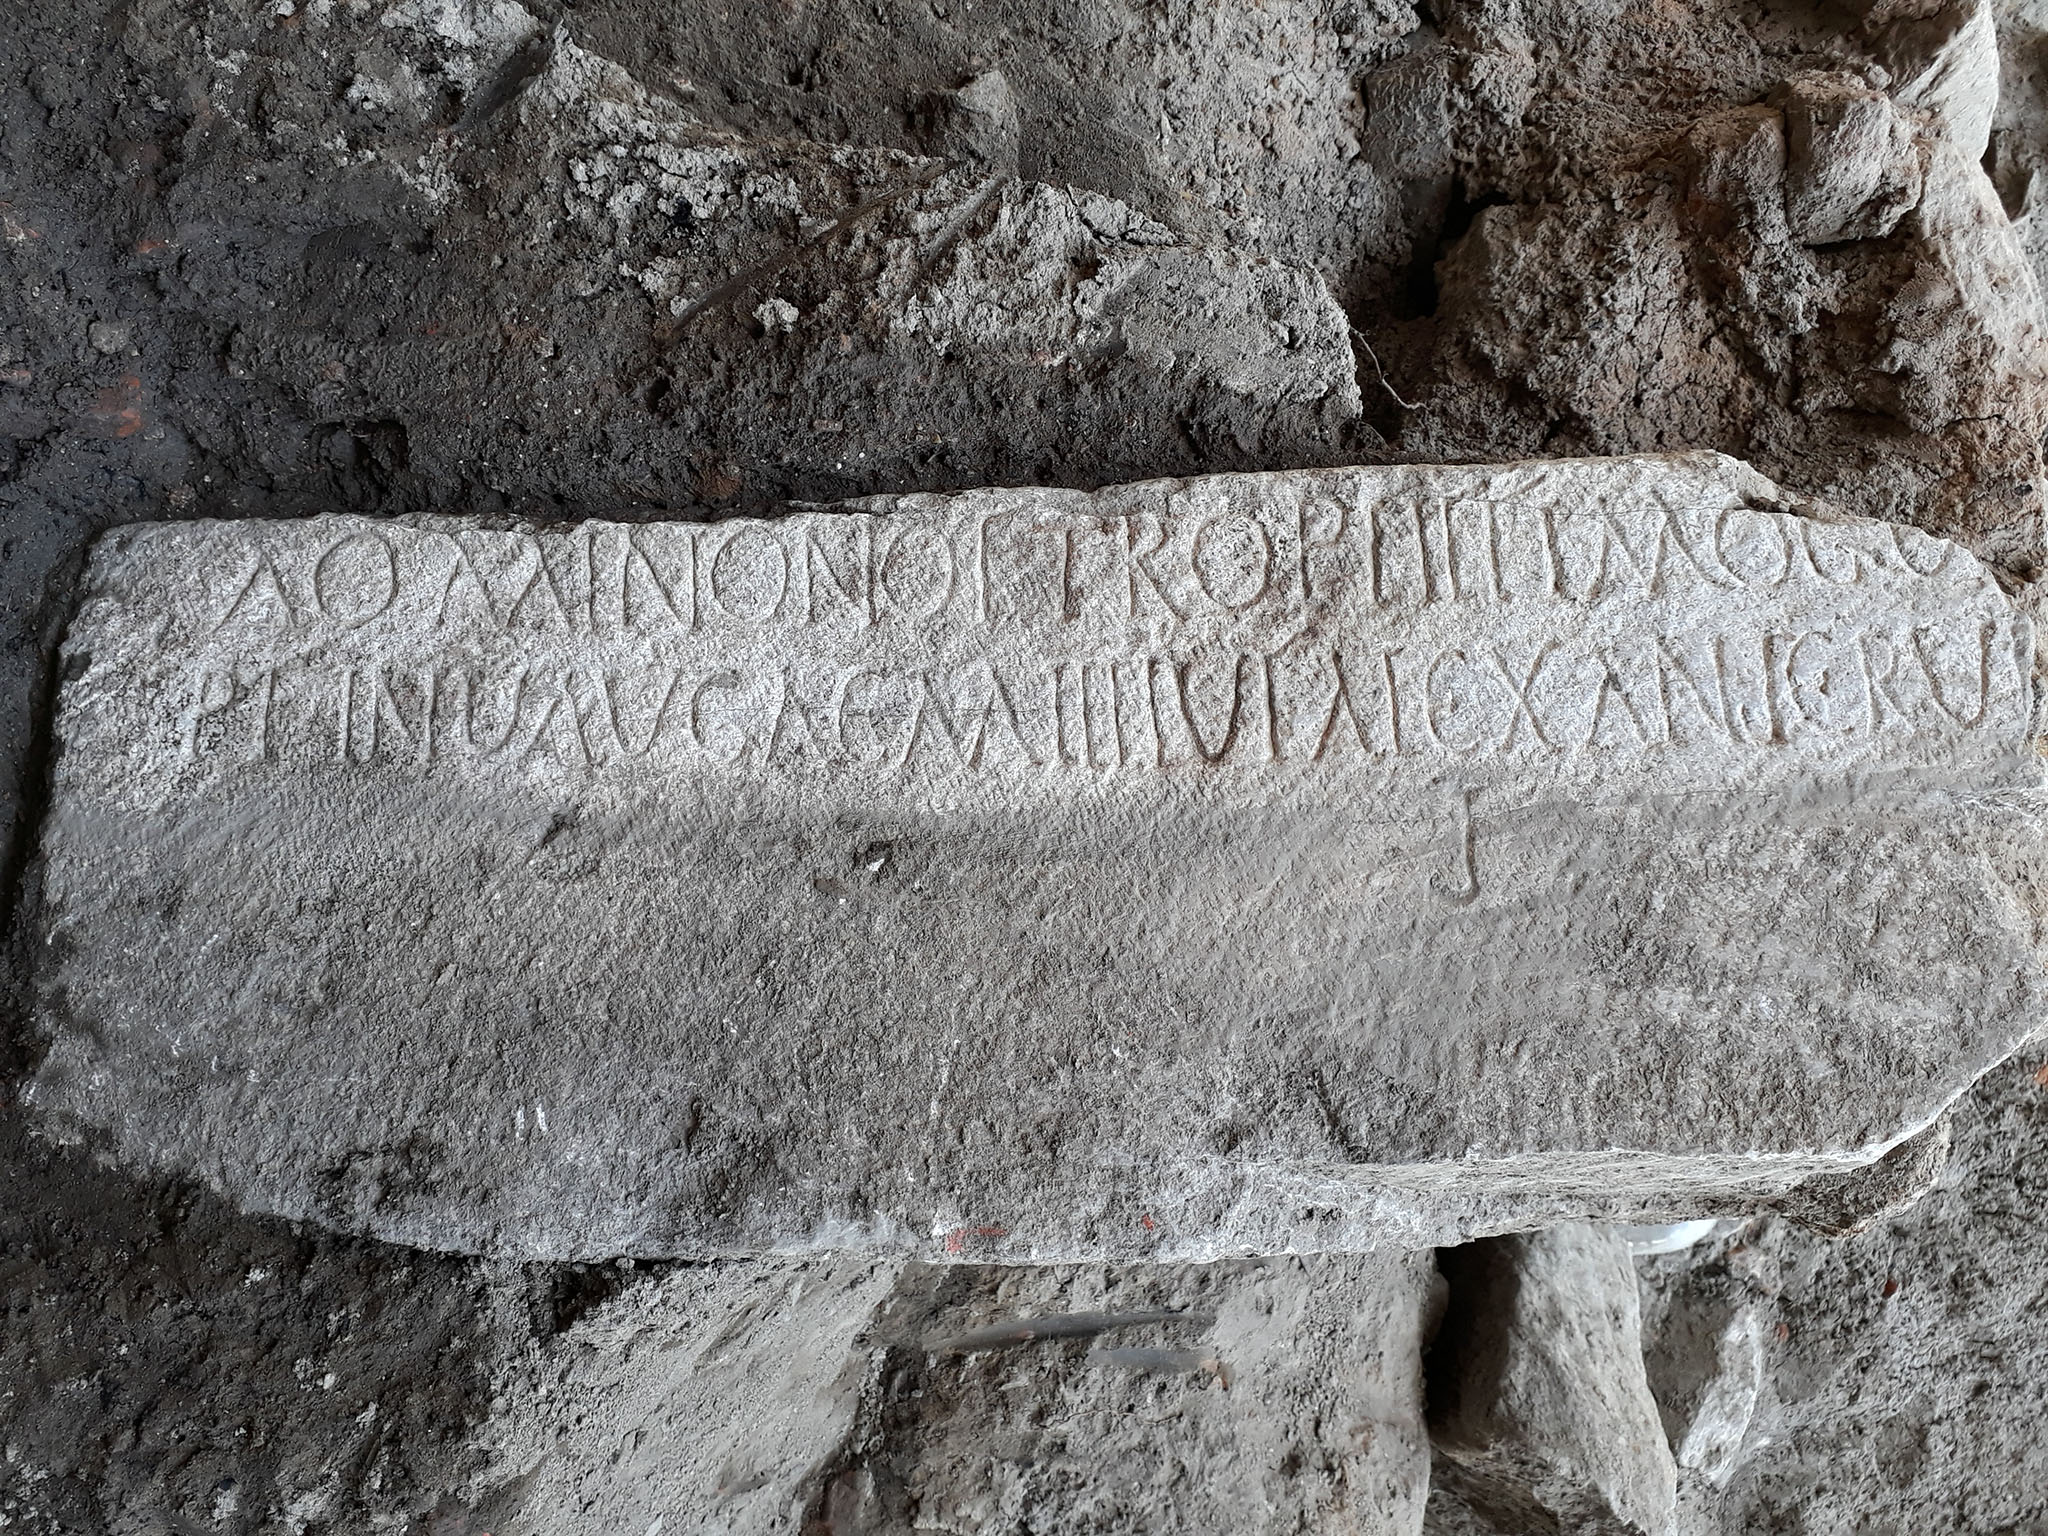 Долговой камень в греции. Греческие надписи на камнях. Древнегреческие надписи. Греческий камень. Надпись на древнегреческом языке.